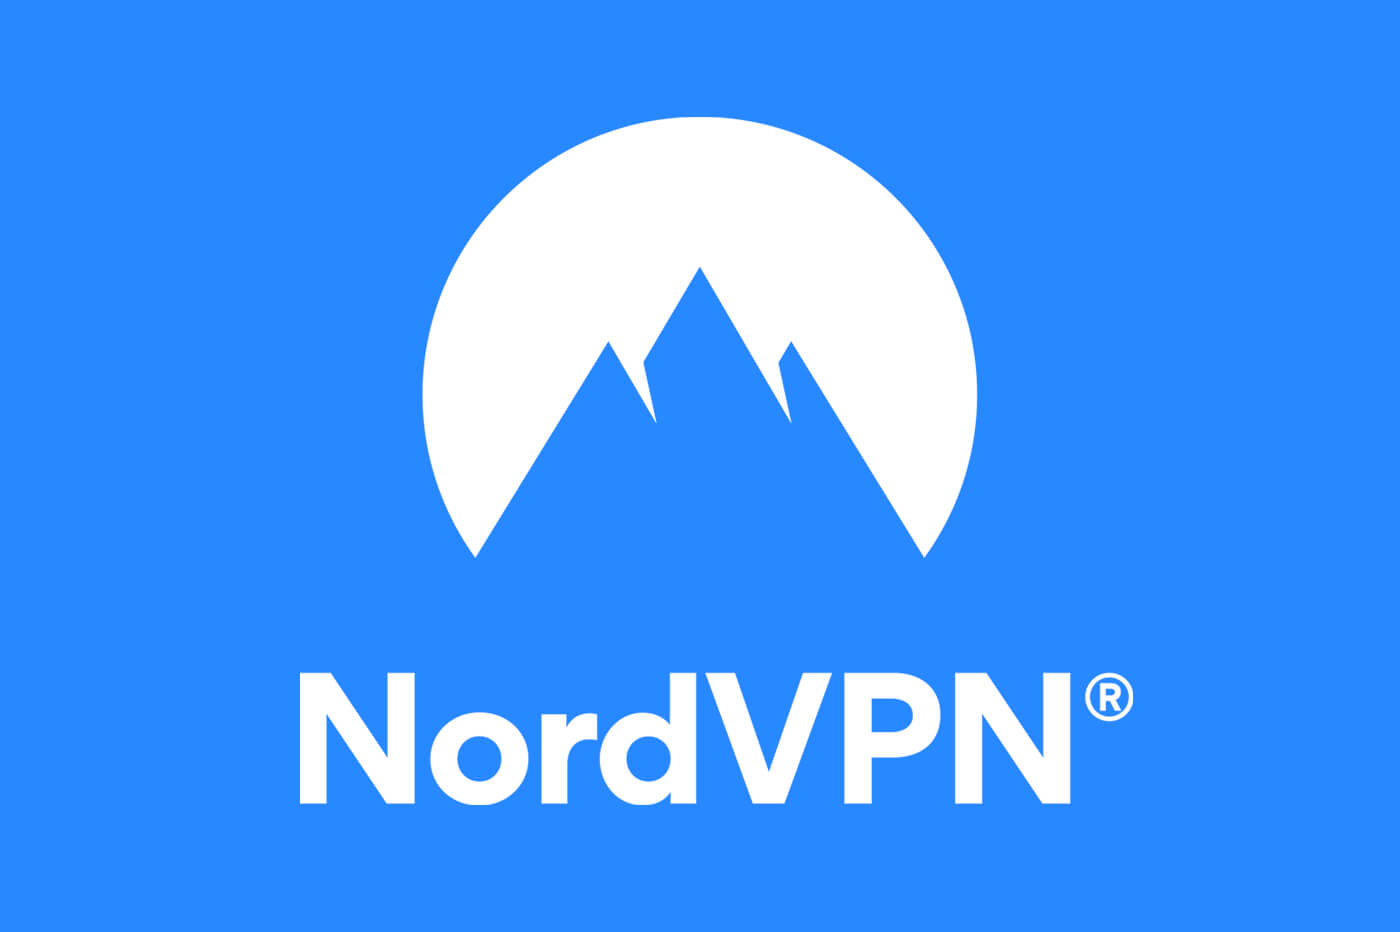 Nome e logotipo da empresa NordVPN, picos de montanhas azuis contra um círculo branco sobre fundo azul.